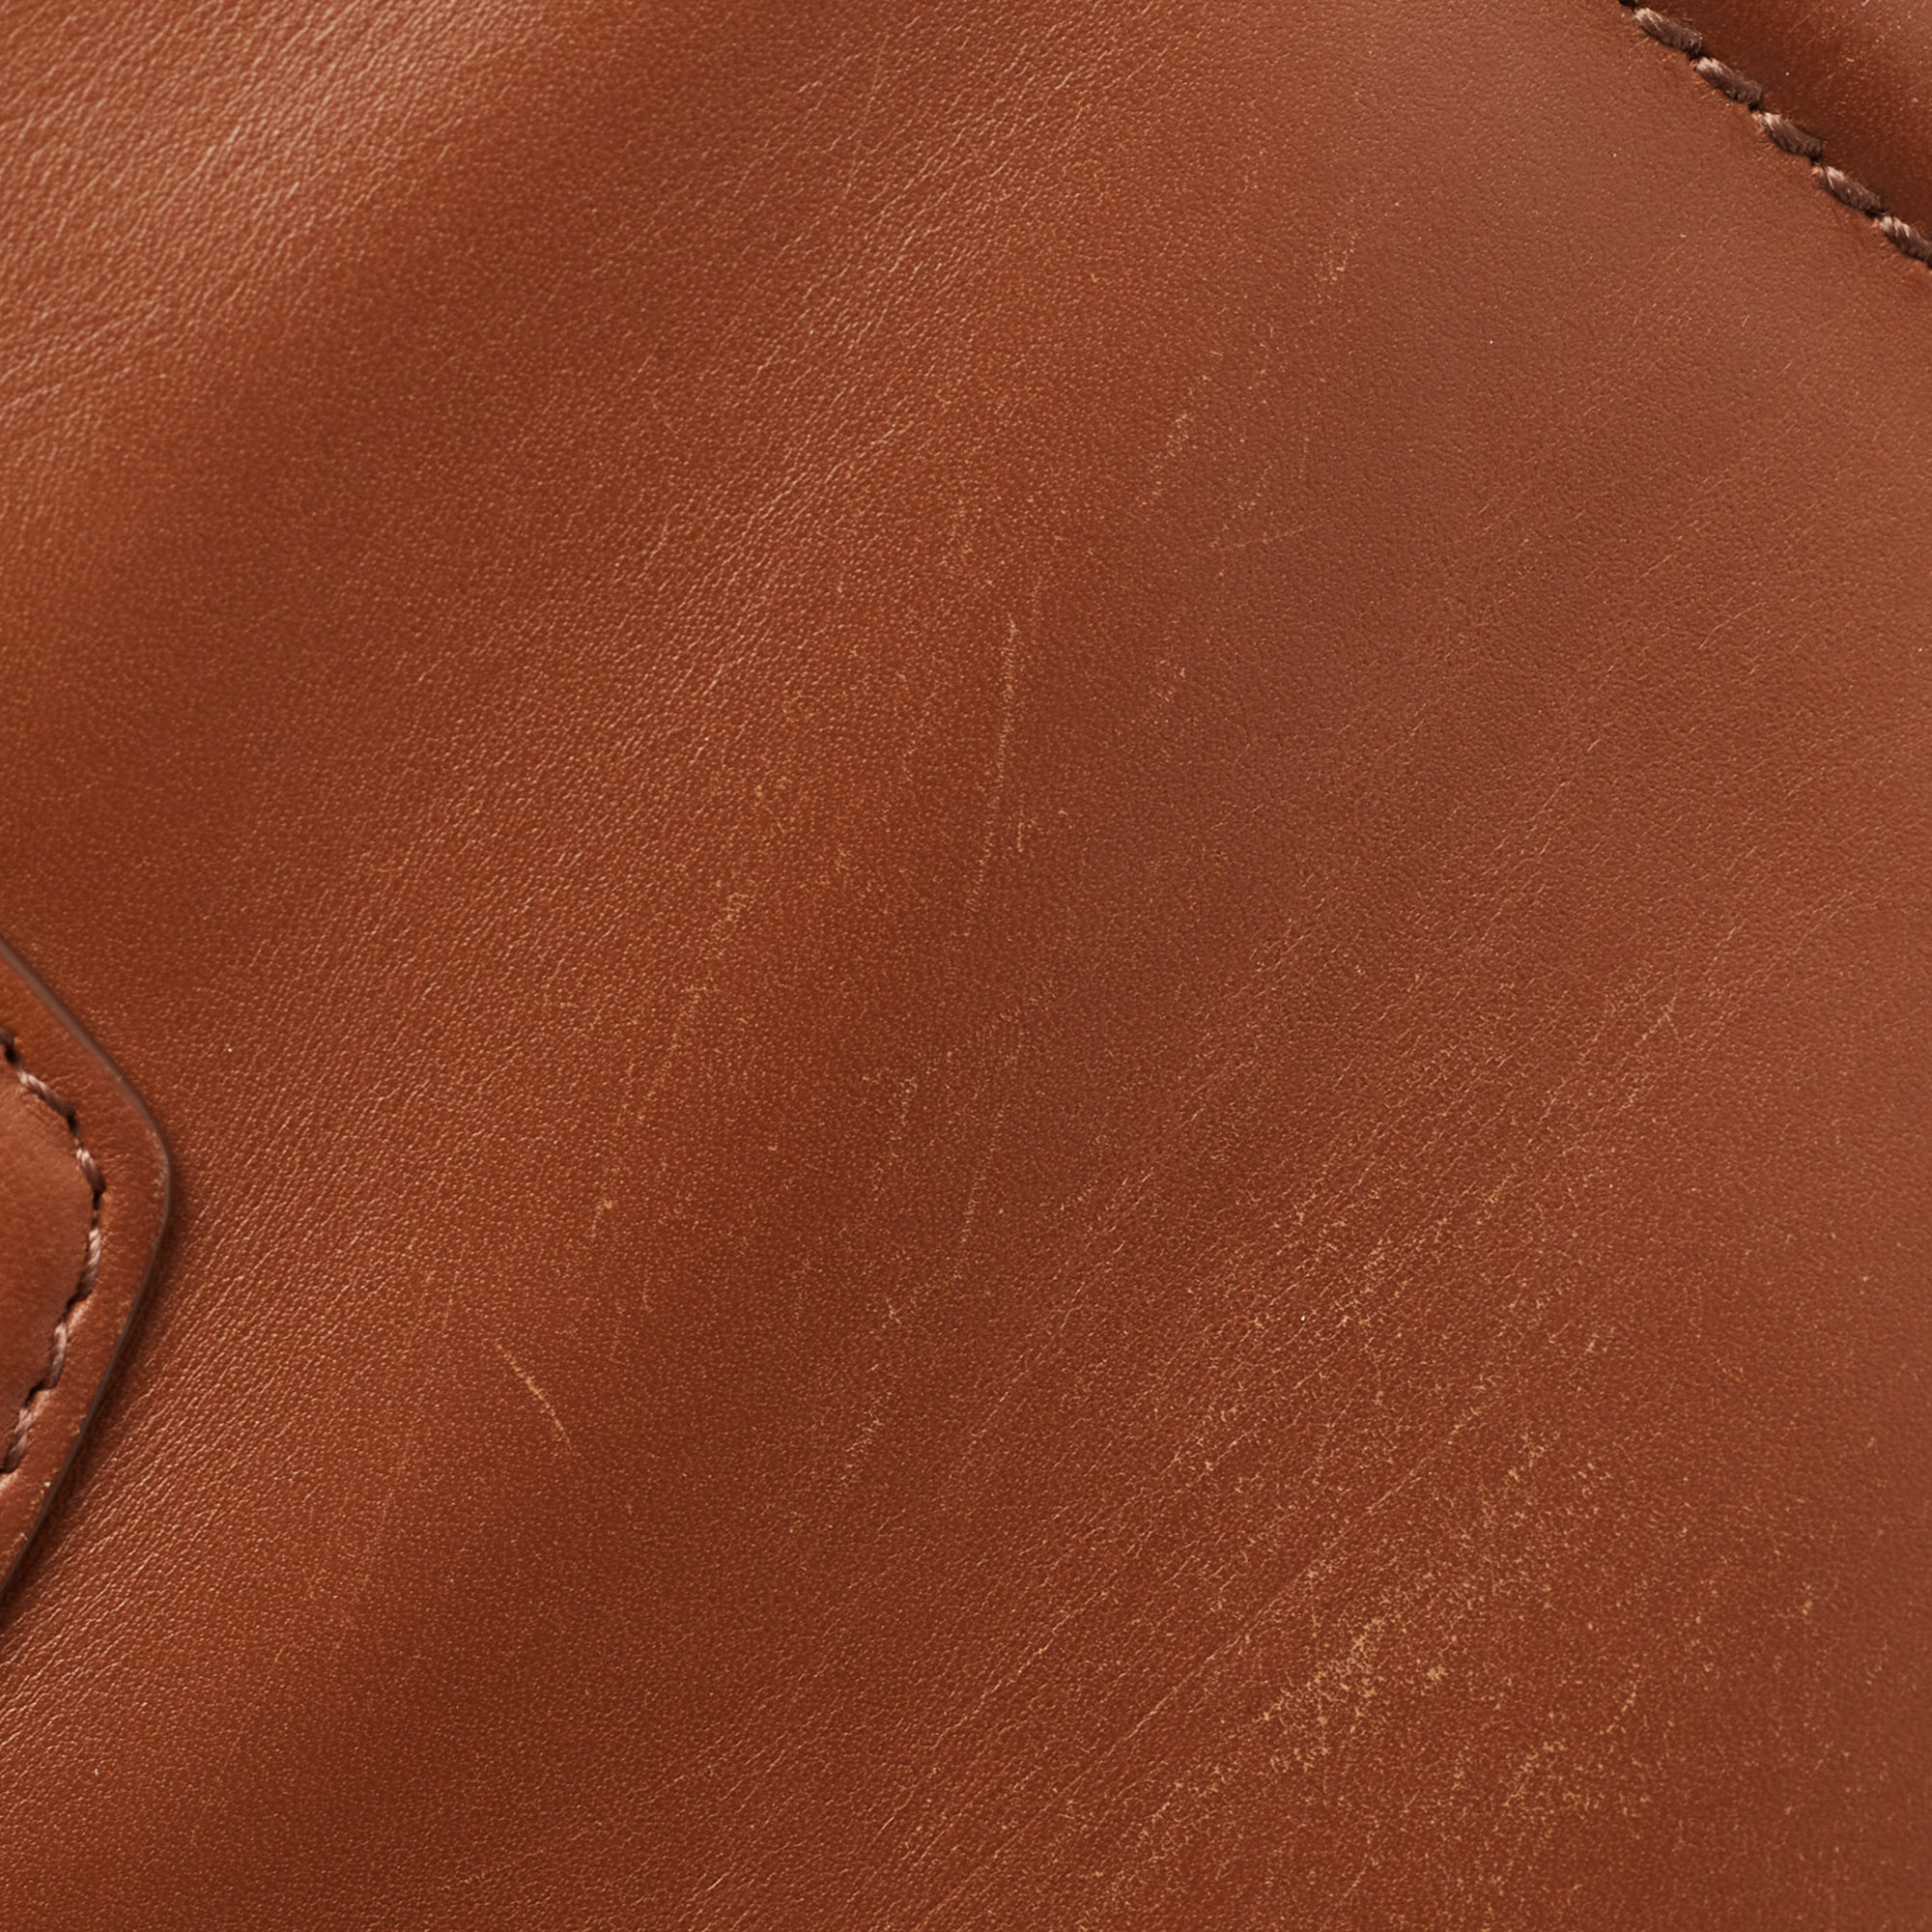 Dolce & Gabbana Brown Leather DG Amore Shoulder Bag